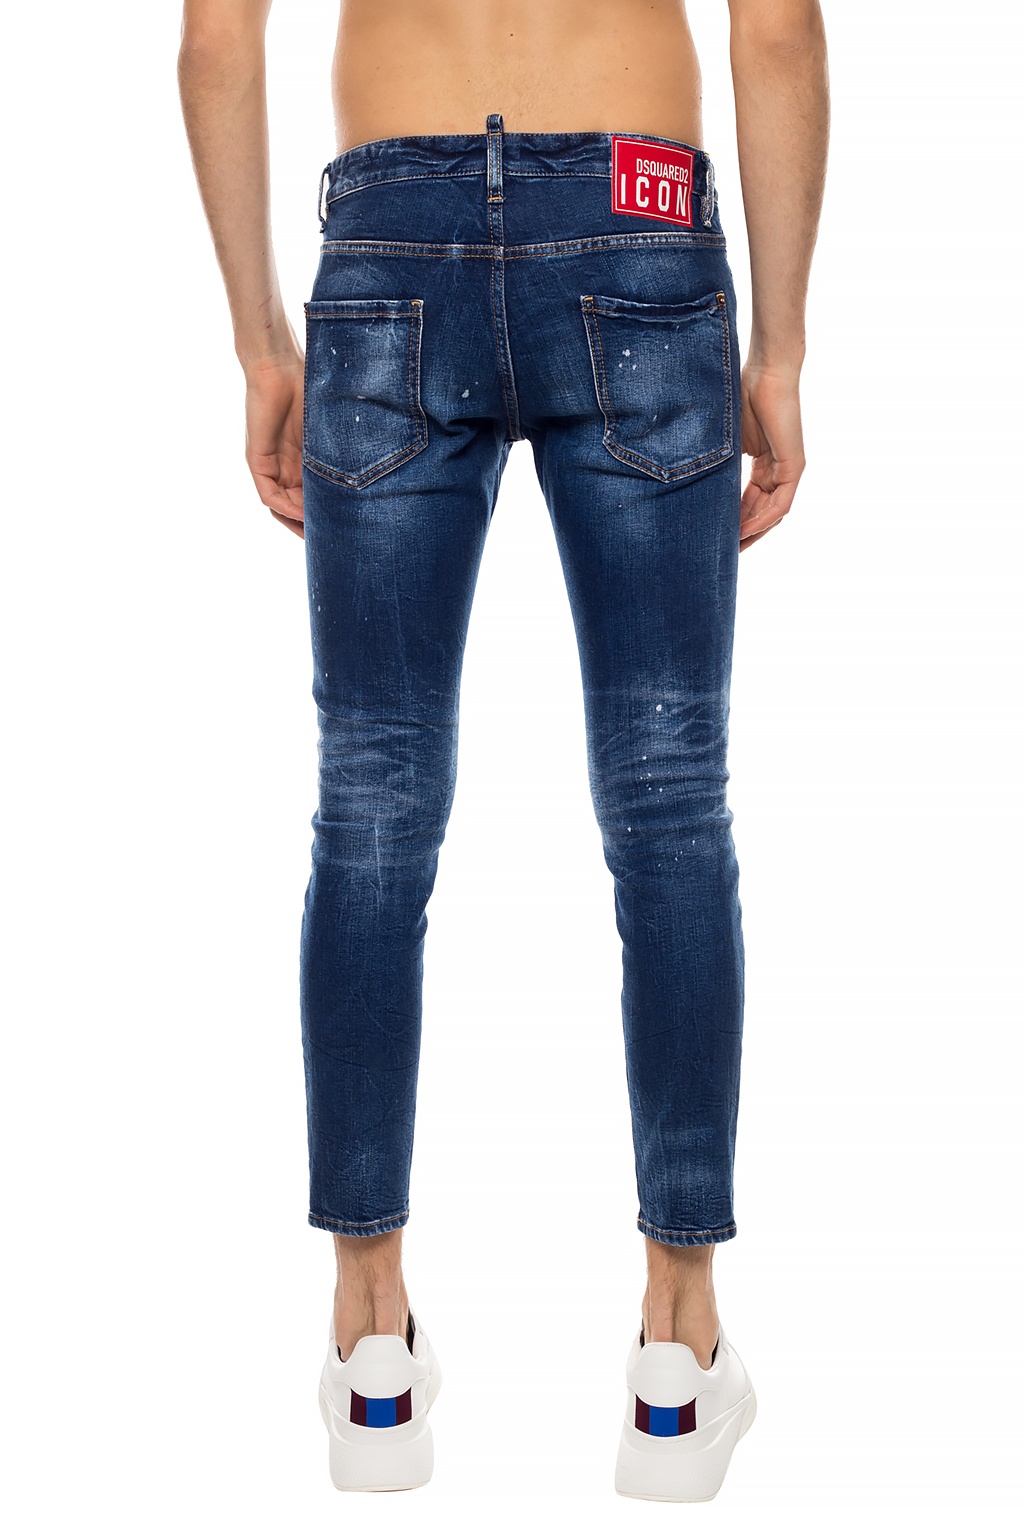 ‘Skinny Dan Jean’ jeans Dsquared2 - Vitkac Canada